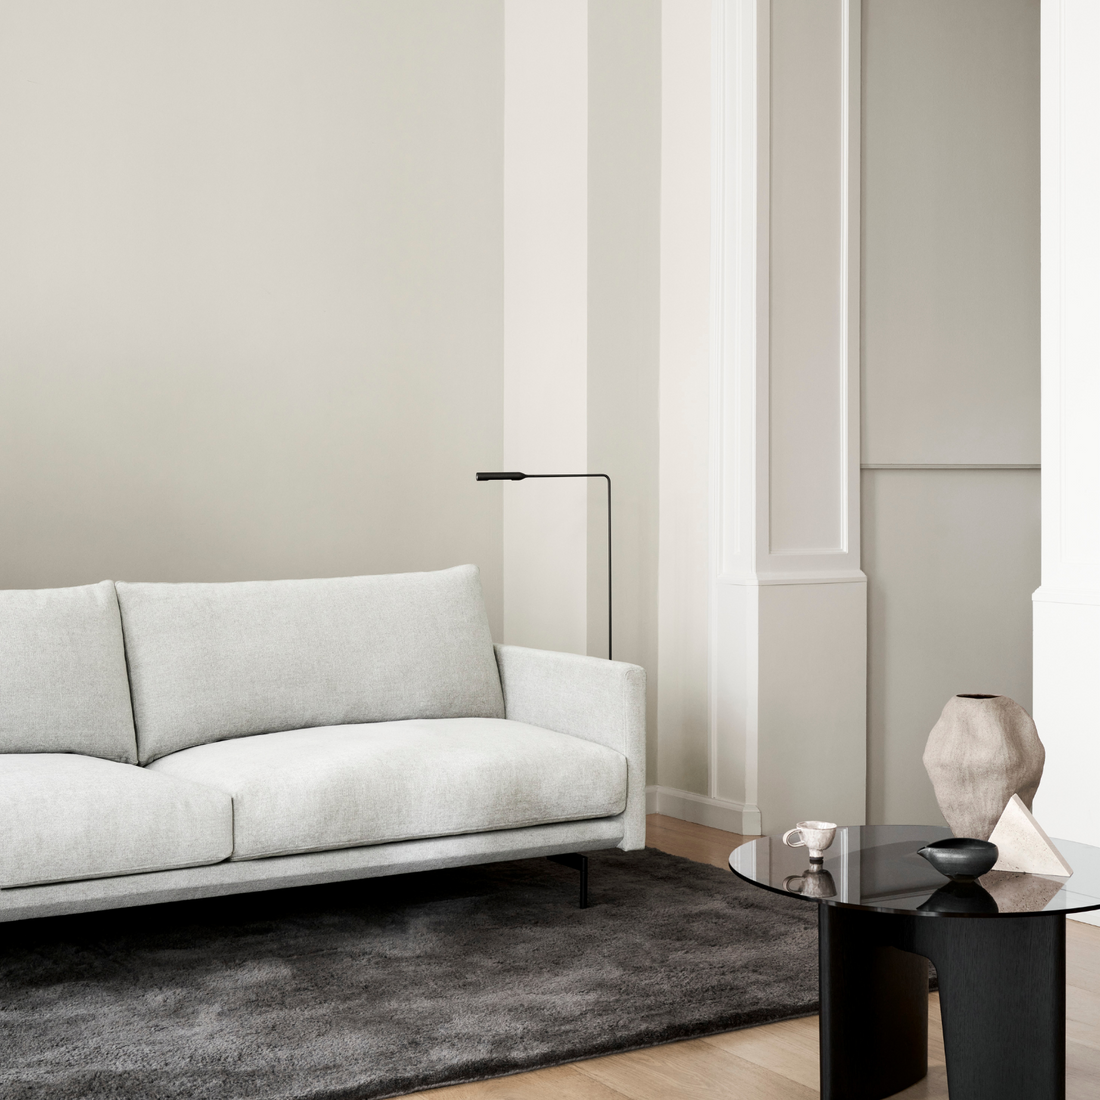 Trace | Modular Sofa